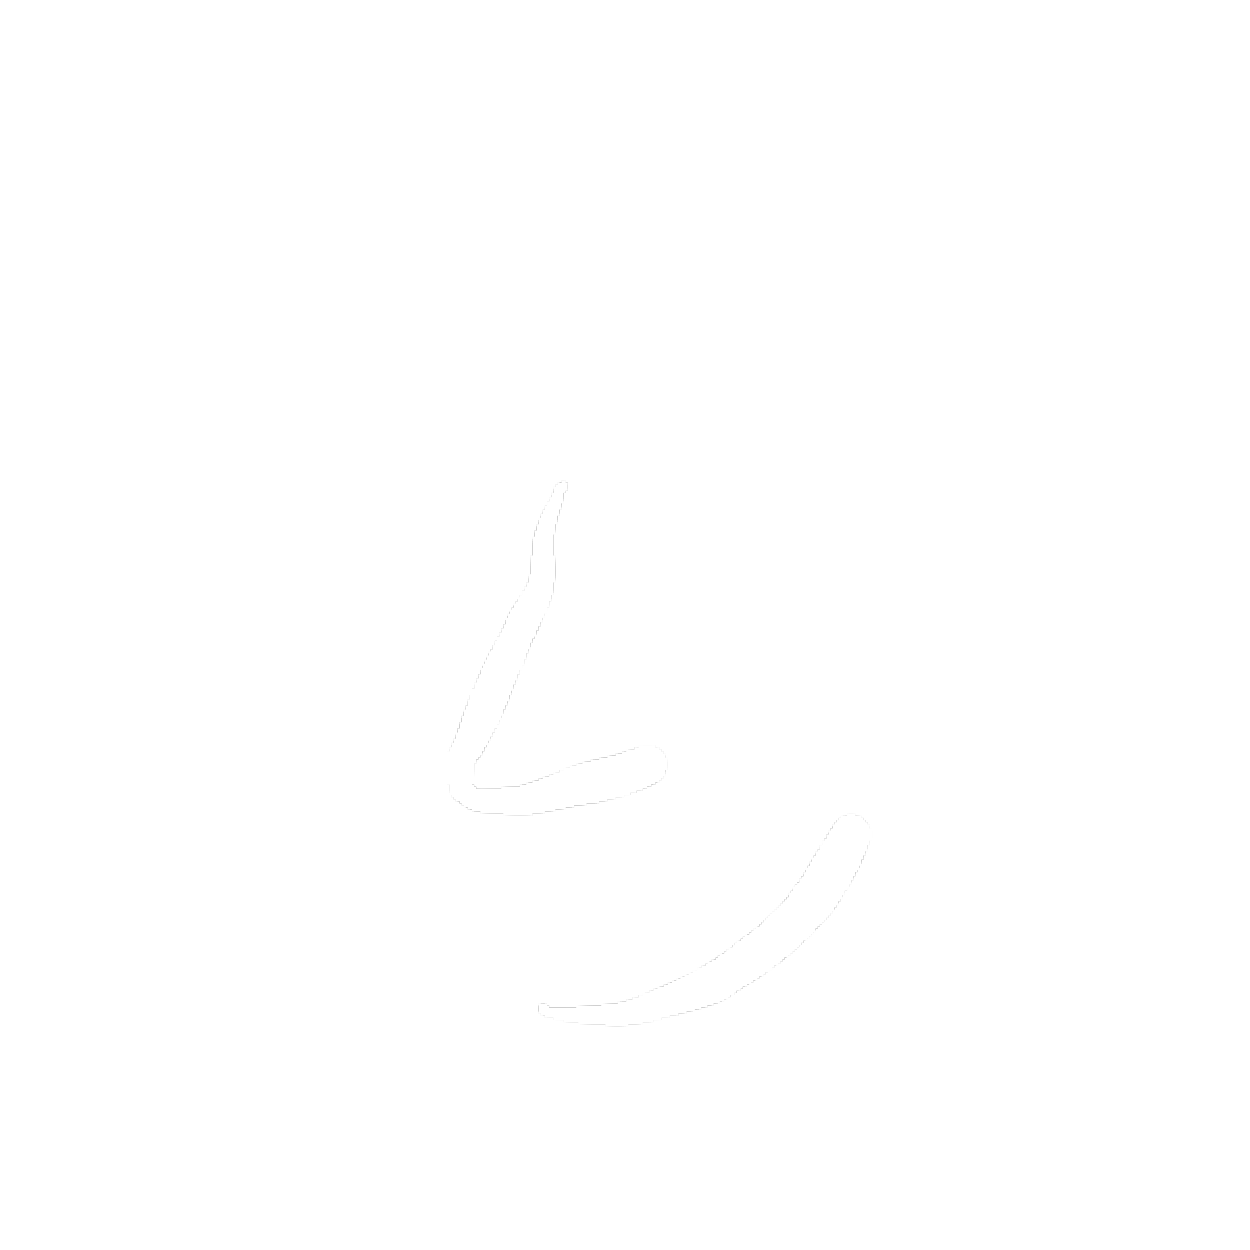 Mike Boddé